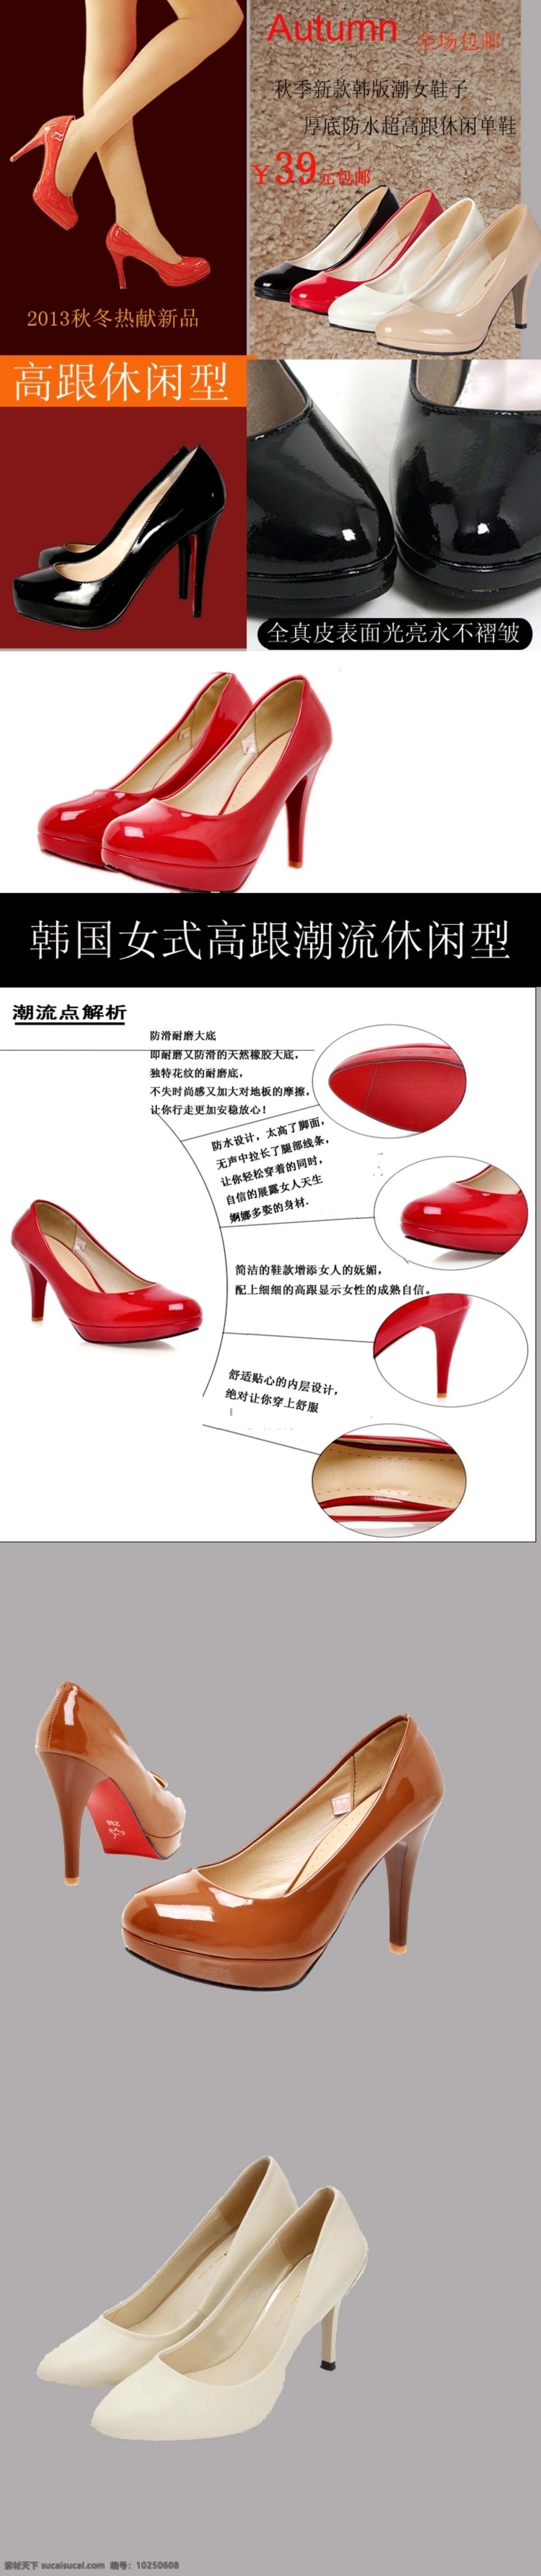 地毯 广告 毛毯 美女 美腿 描述 模板 女鞋 淘宝 时尚 装修 鞋子 海报 中文模版 网页模板 源文件